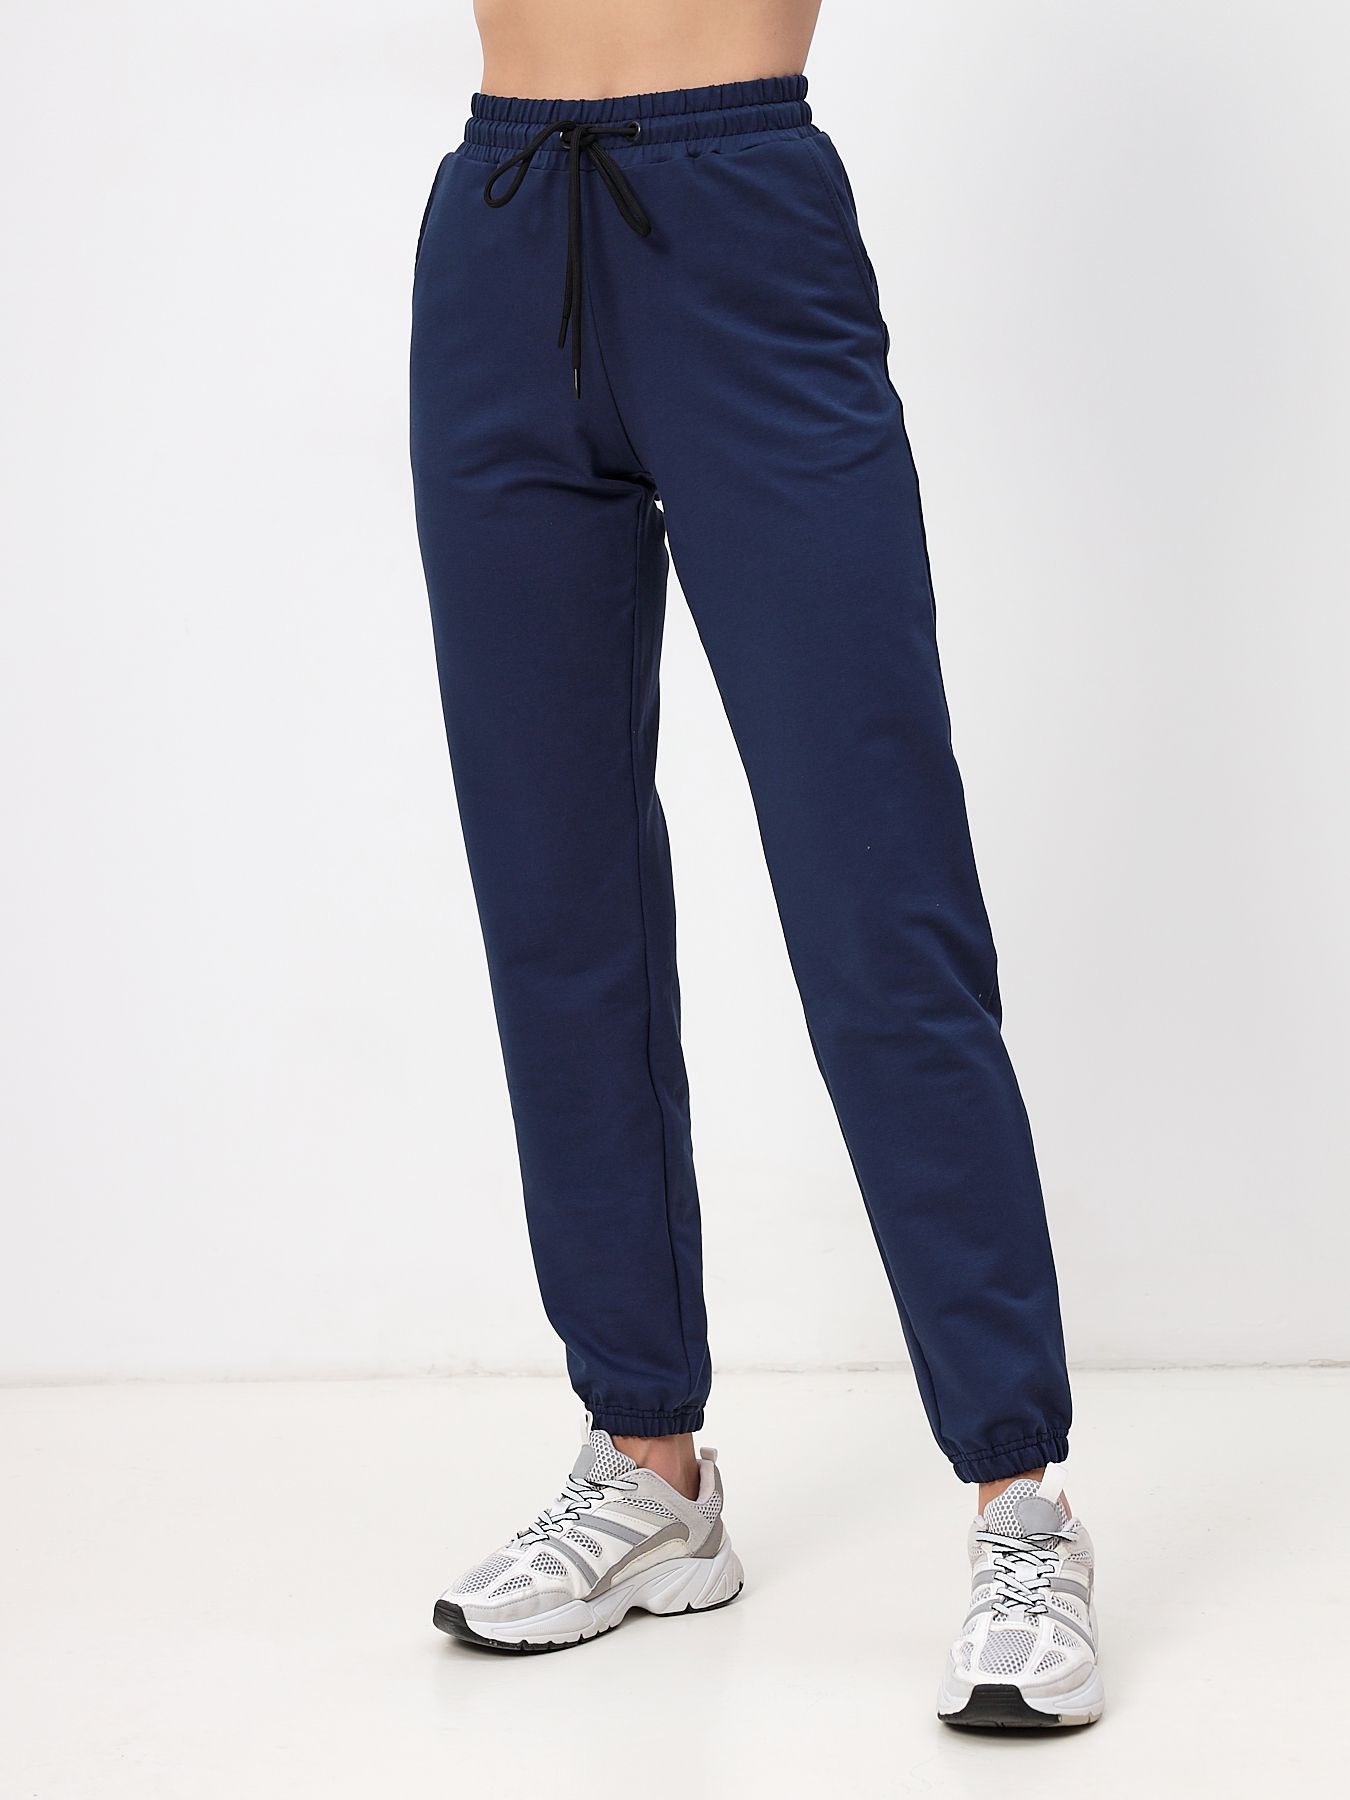 Спортивные брюки женские MOM №1 3170 синие 46 RU